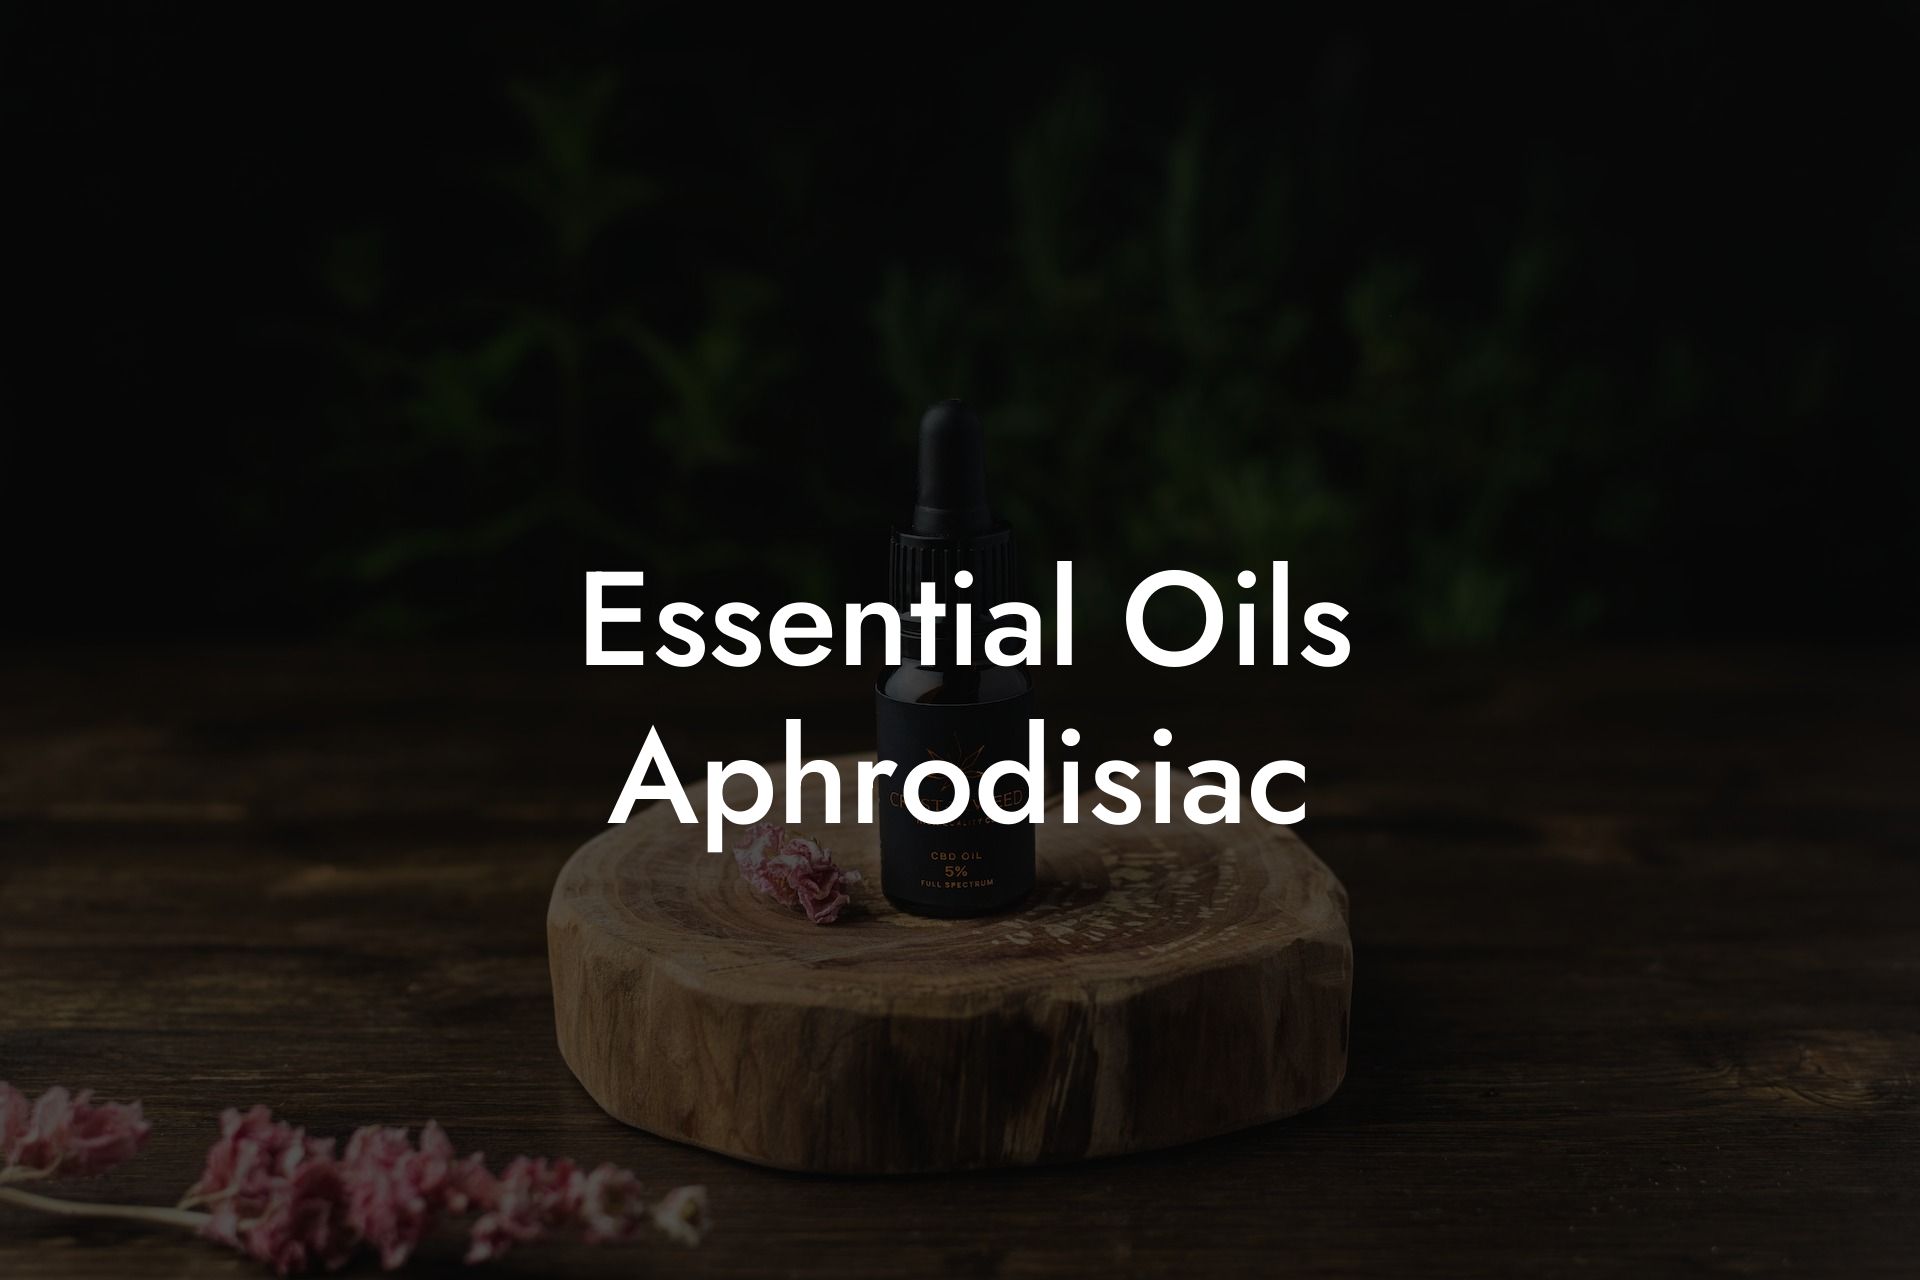 Essential Oils Aphrodisiac